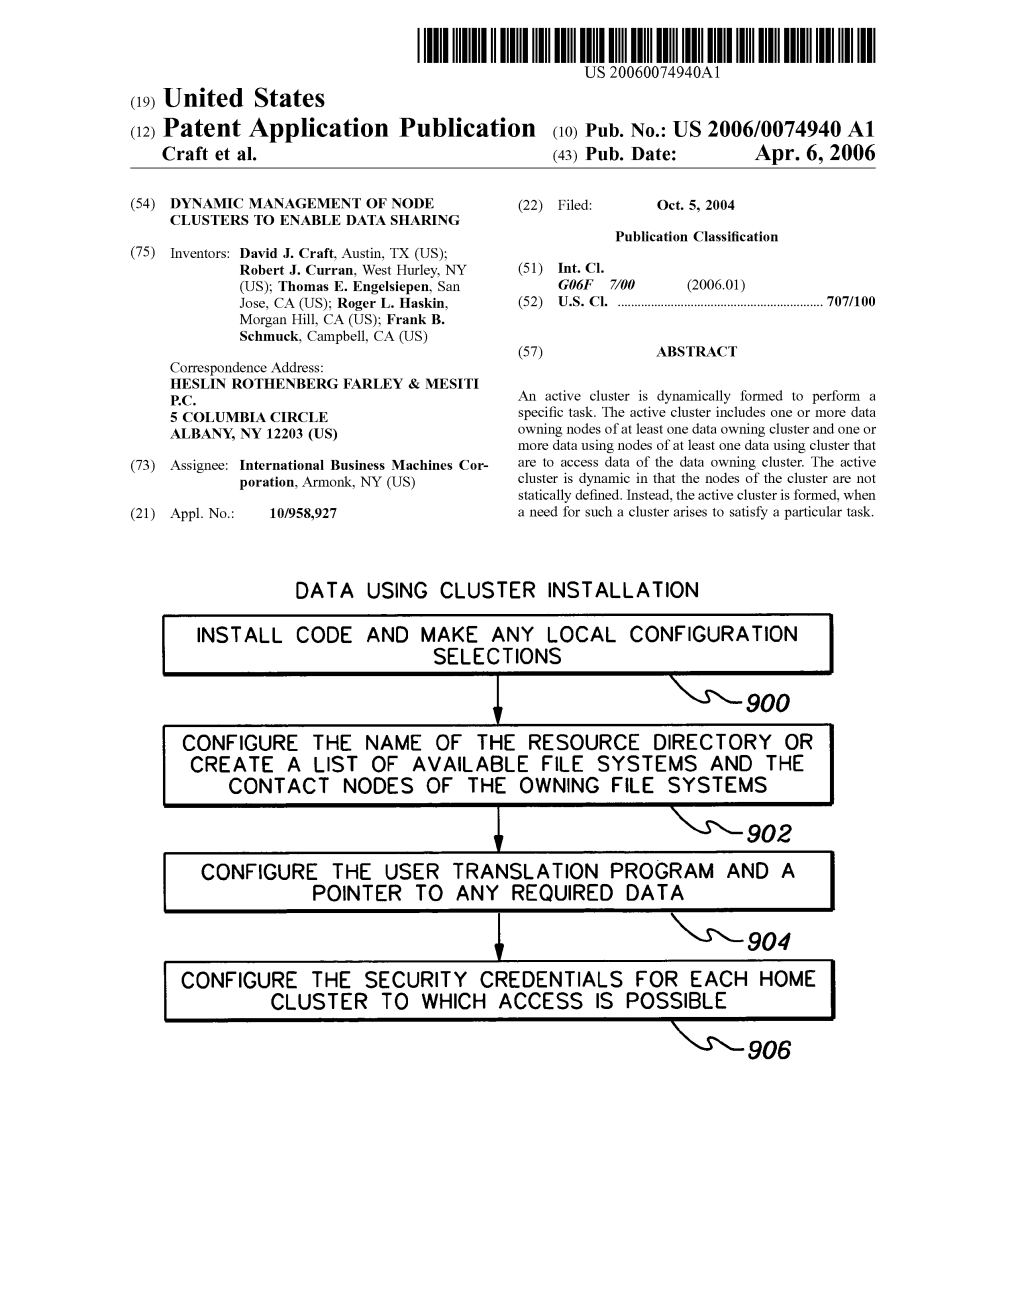 (12) Patent Application Publication (10) Pub. No.: US 2006/007494.0 A1 Craft Et Al